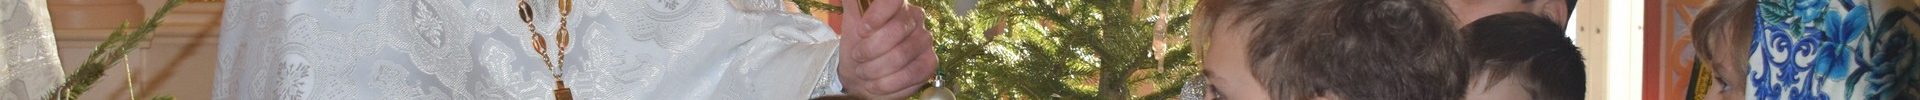 Рождественская коляда на приходе Преображенского храма д. Спас-Каменка